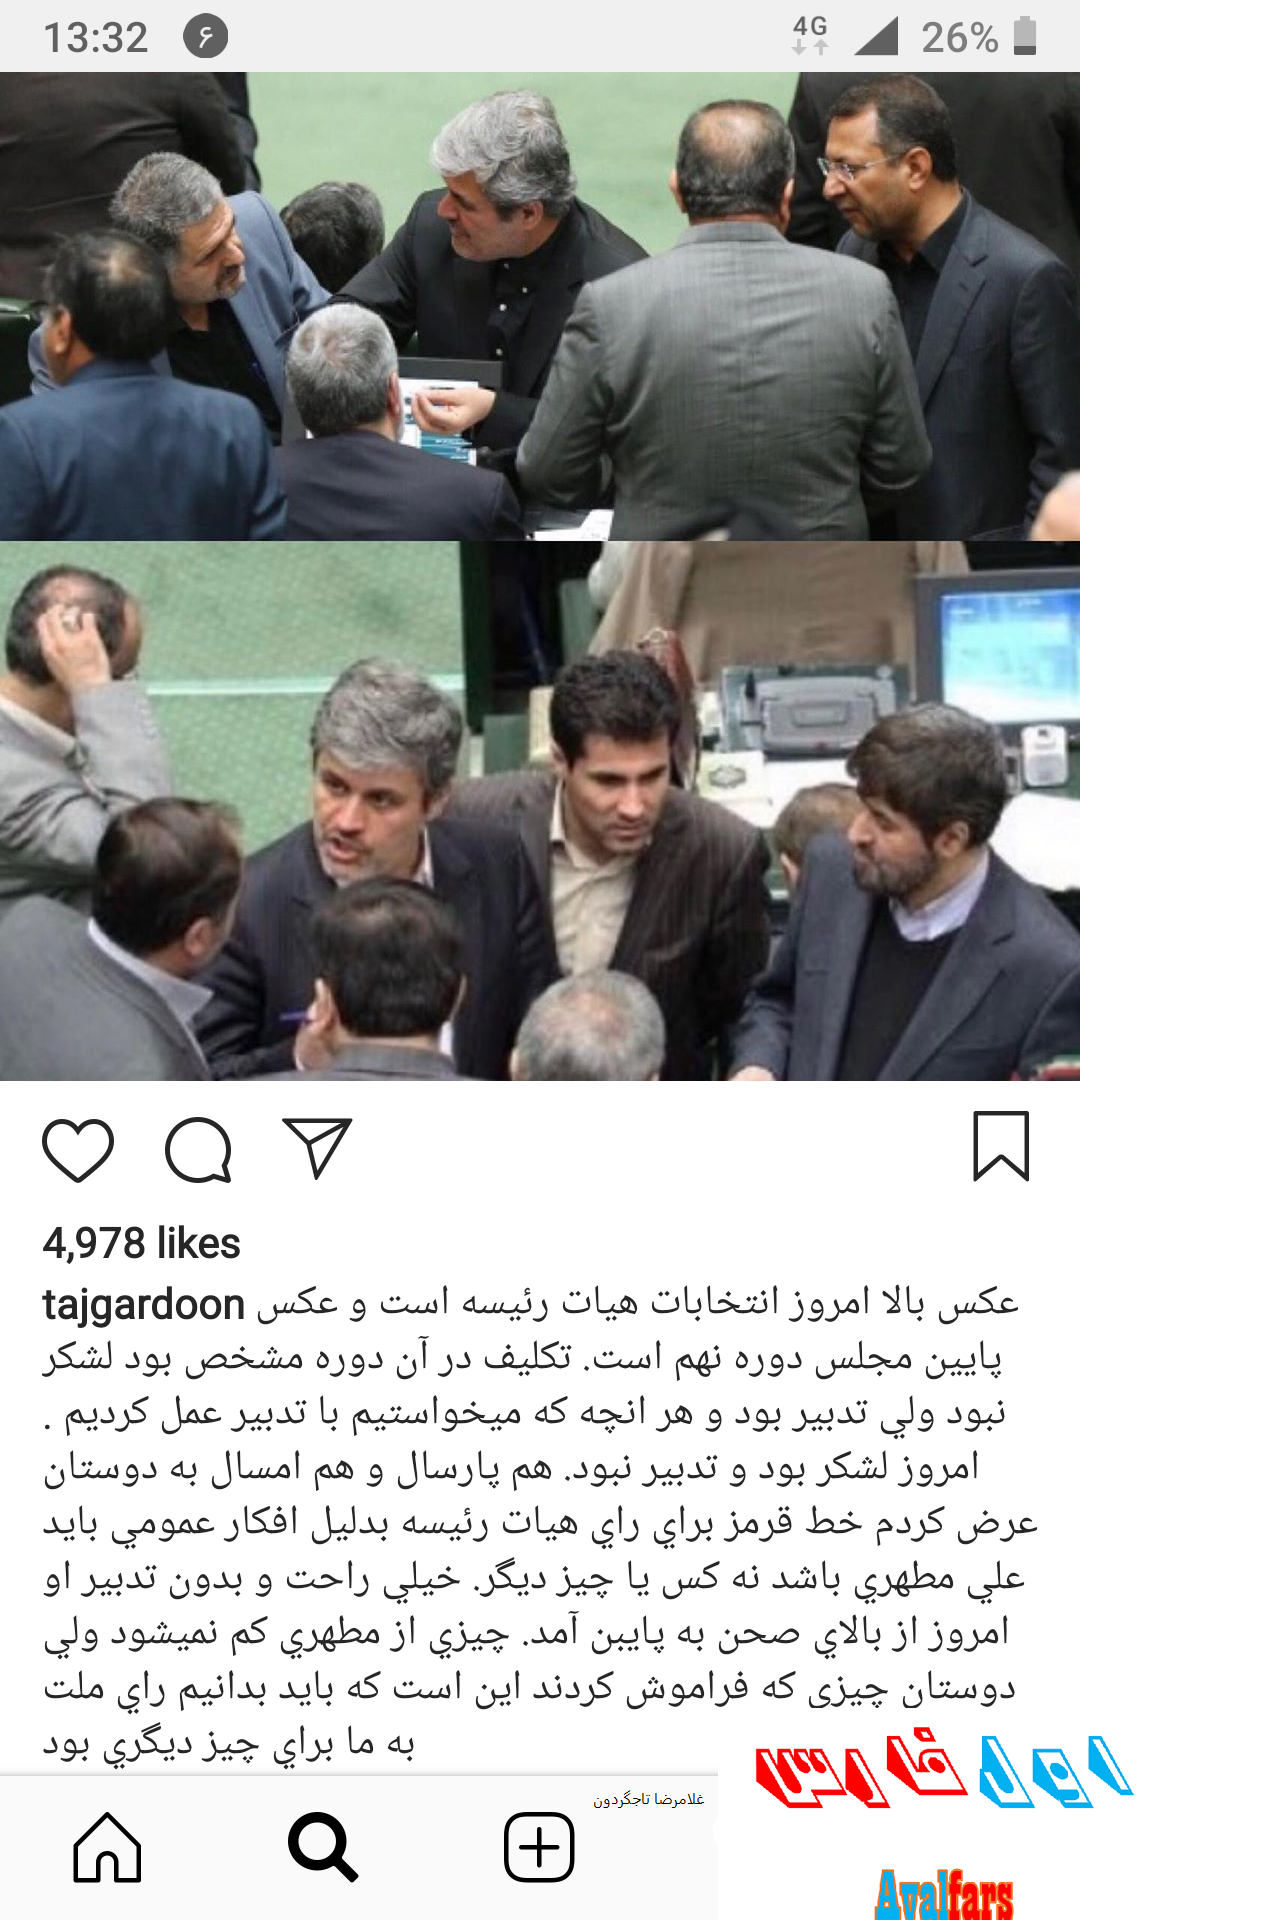 نظر غلامرضا تاجگردون در خصوص حذف مطهری از هیئت رئیسه مجلس+عکس